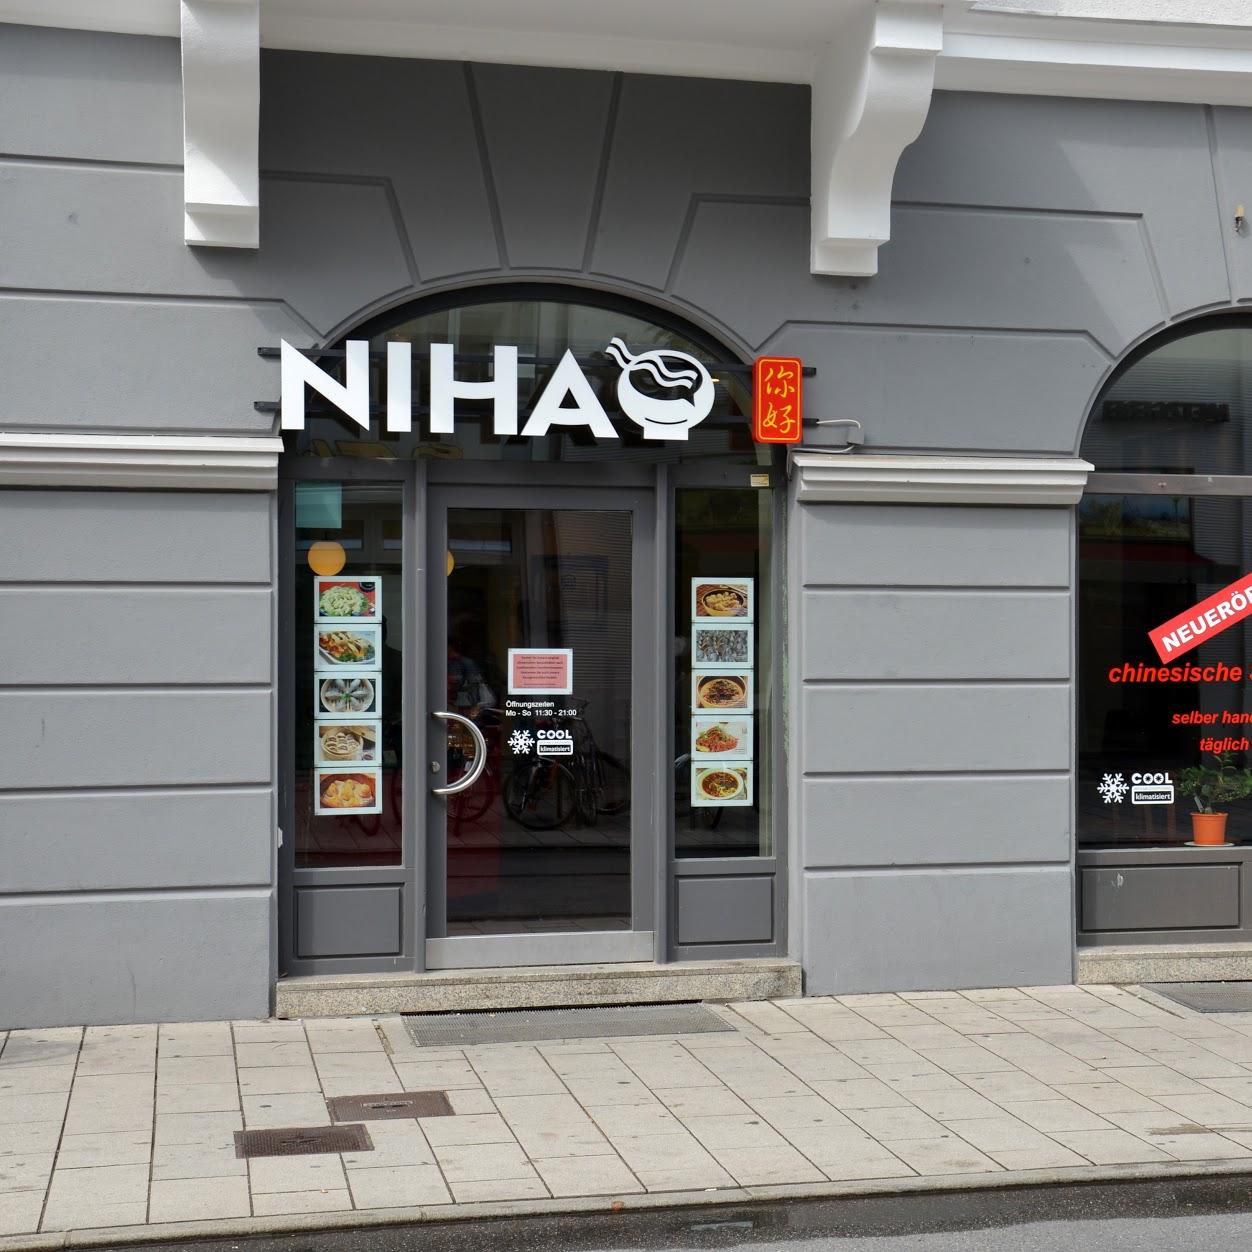 Restaurant "NIHAO" in München